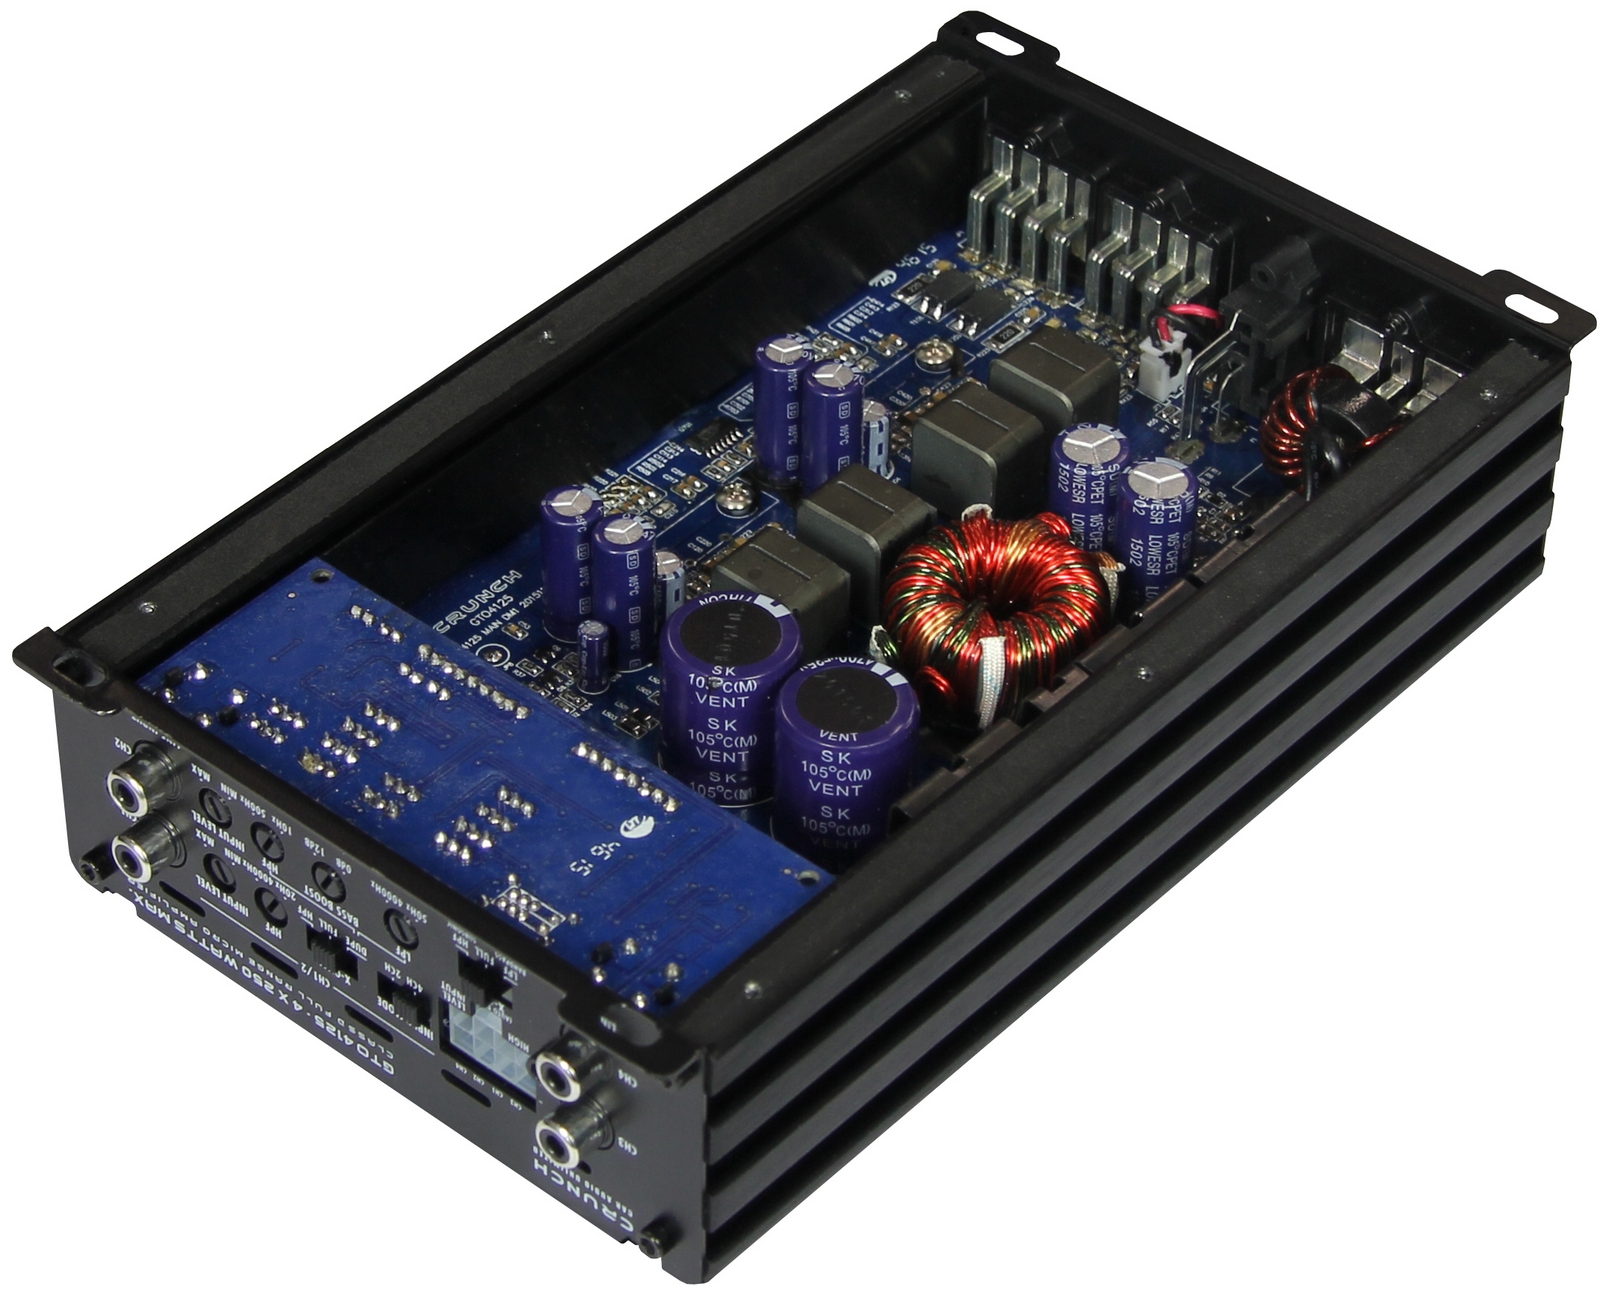 Crunch GTO-4125 4-Kanal Verstärker Endstufe Amplifier 500 Watt RMS